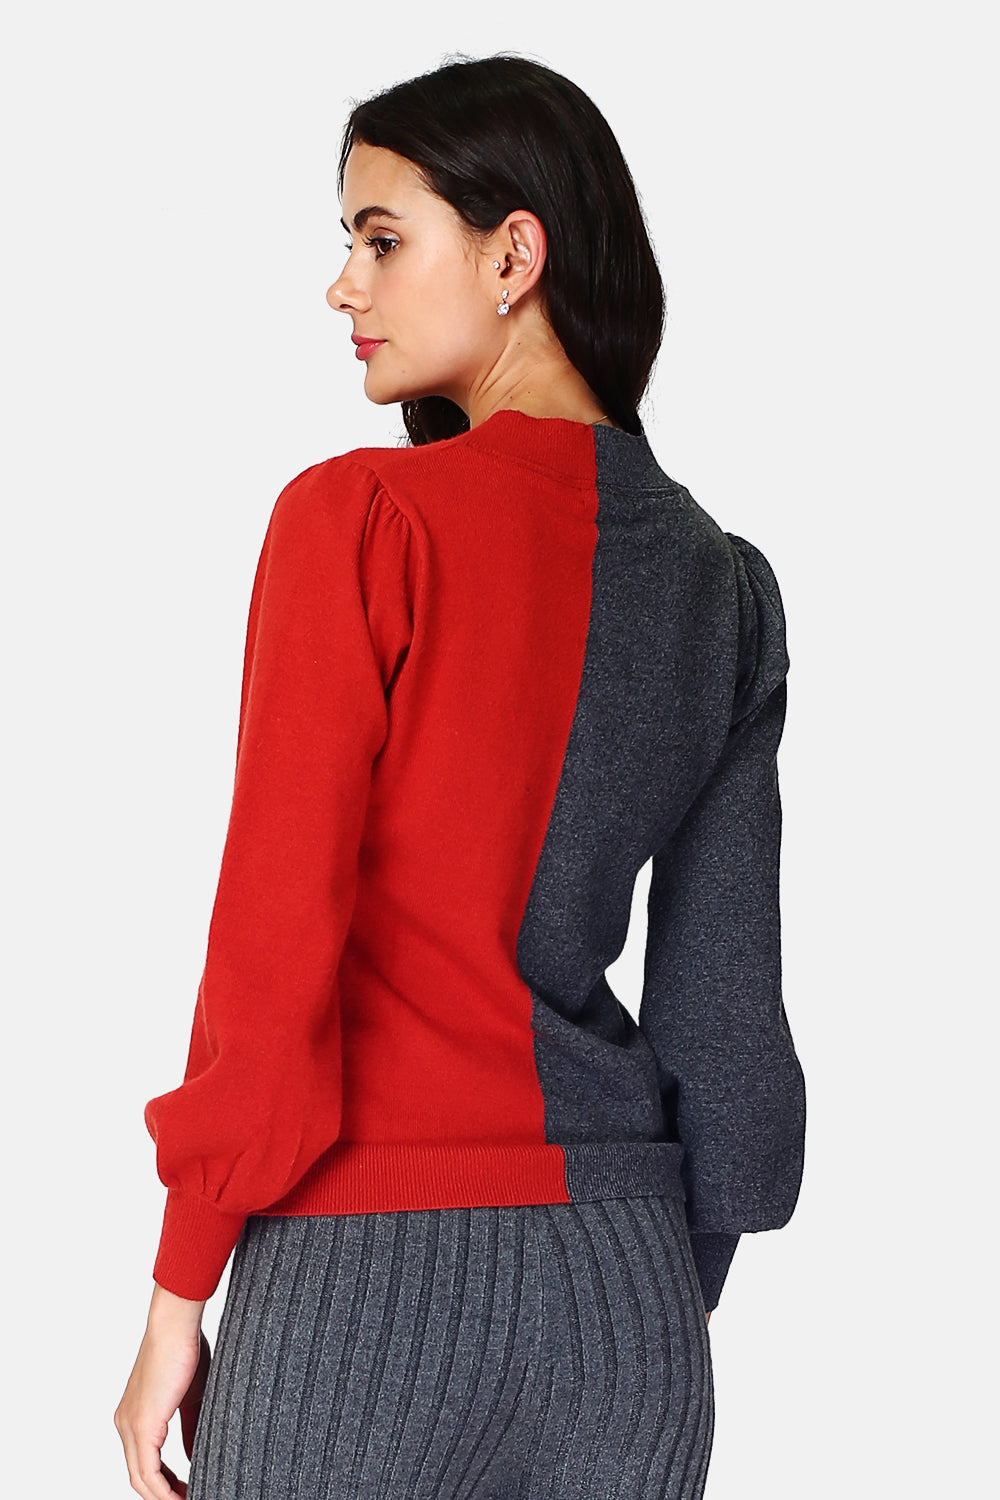 Pullover mit großem V-Ausschnitt, langen Ärmeln, leicht bauschig, zweifarbig